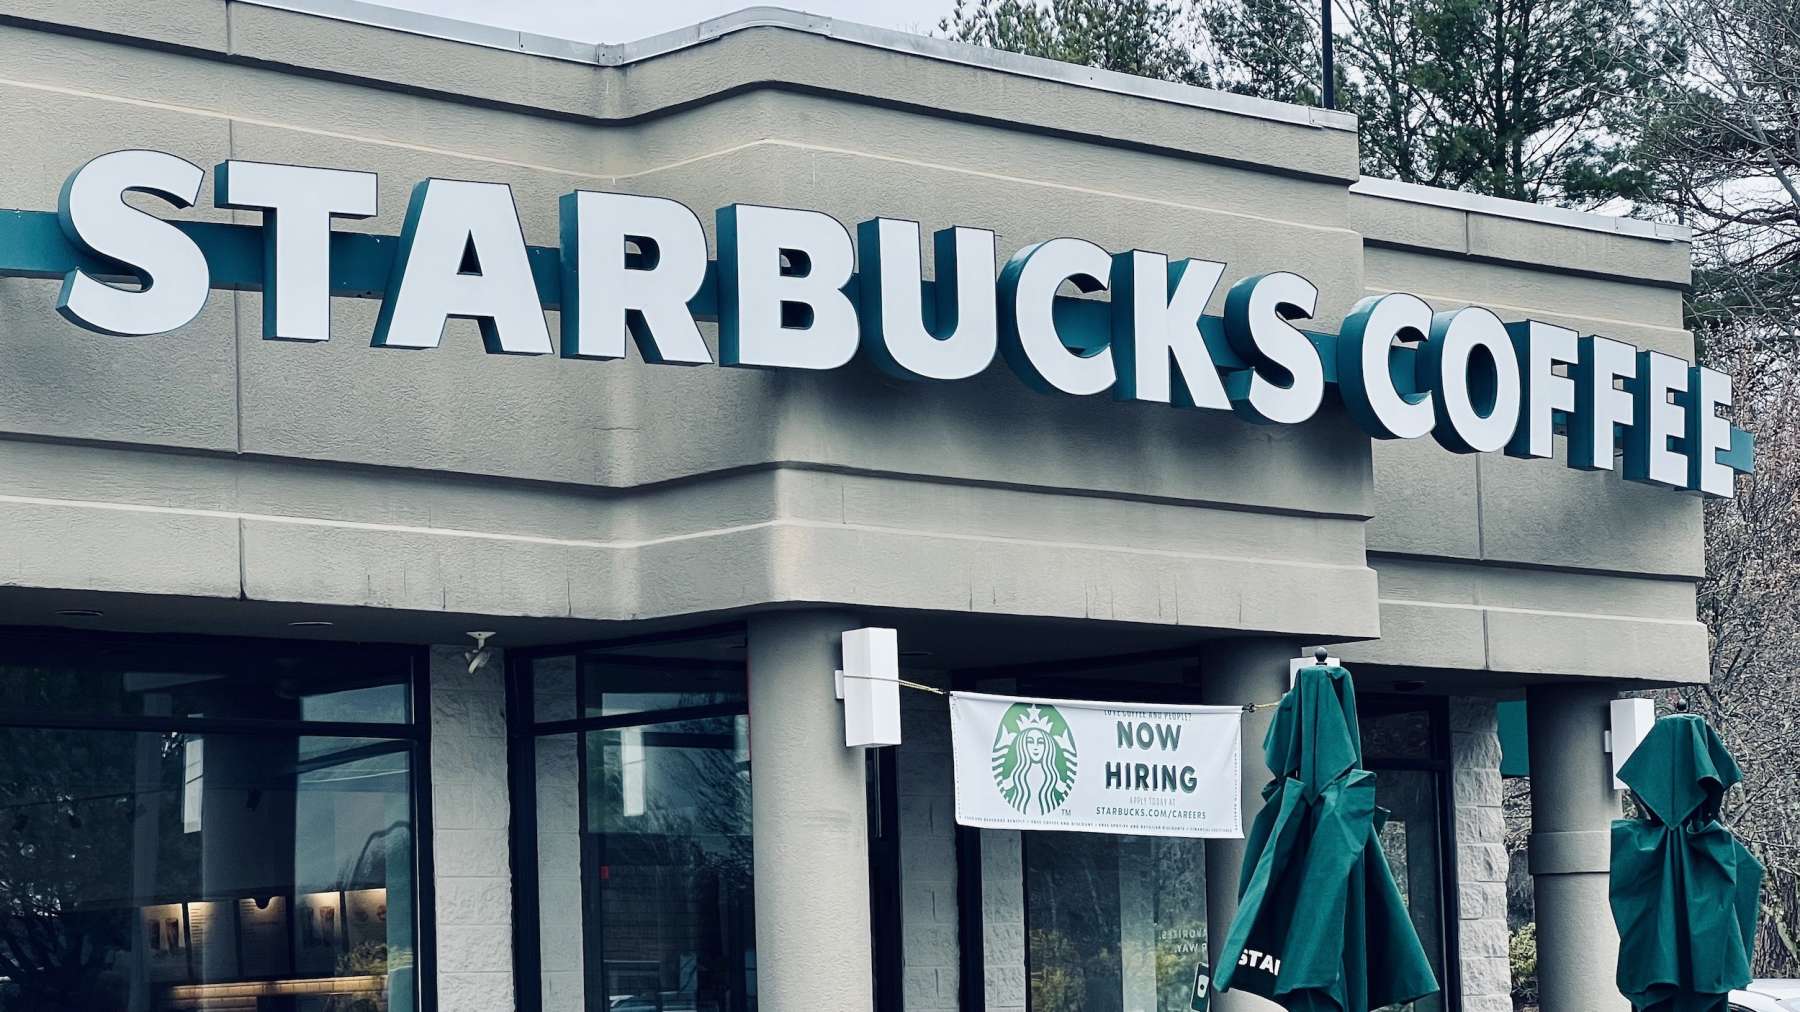 Rhode Island News: An interview with Starbucks barista and union organizer Cassie Burke